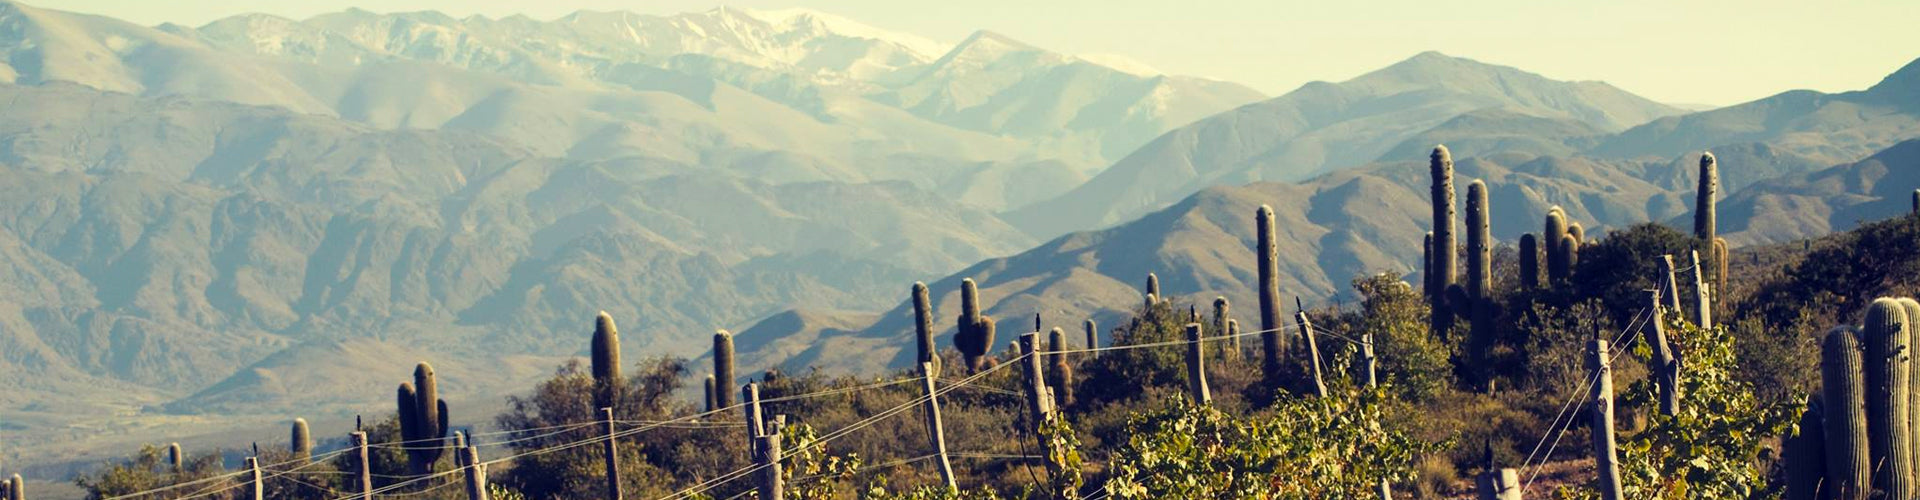 Bodega Colomé High Altitude Vineyards in Argentina